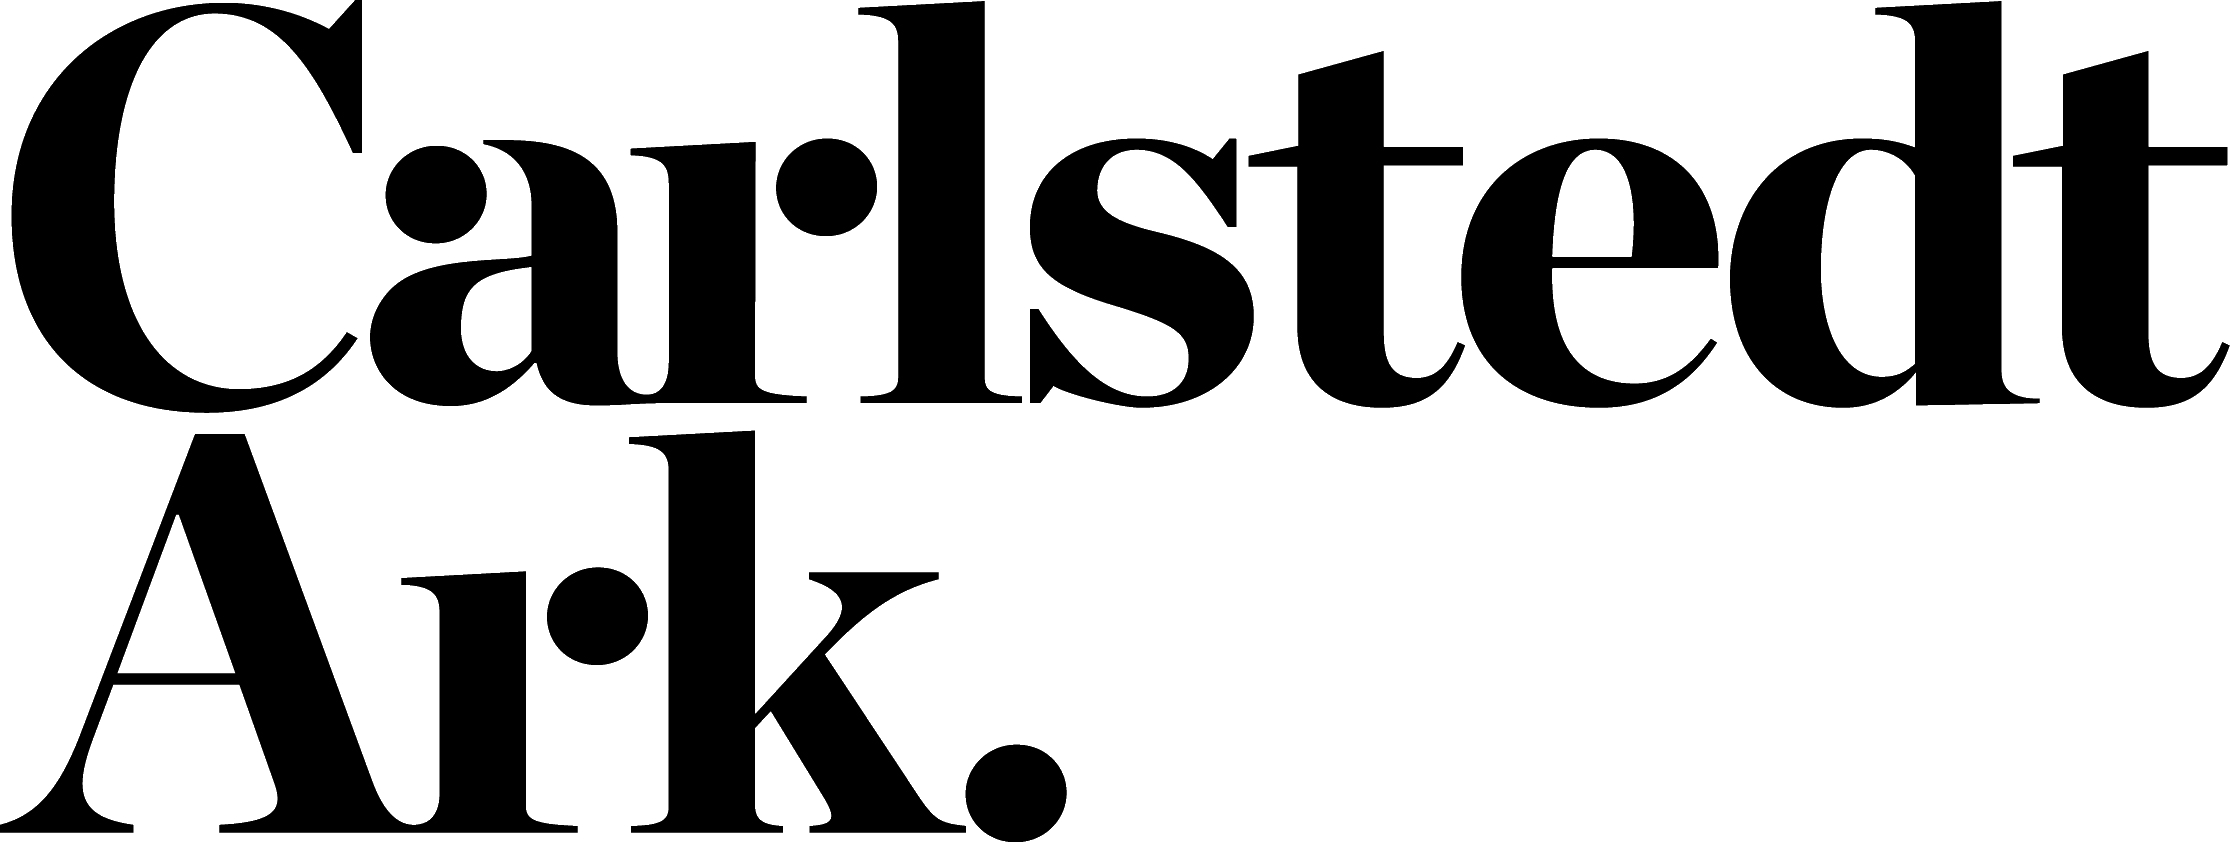 Carlstedt Arkitekter logo Försäljningschefen